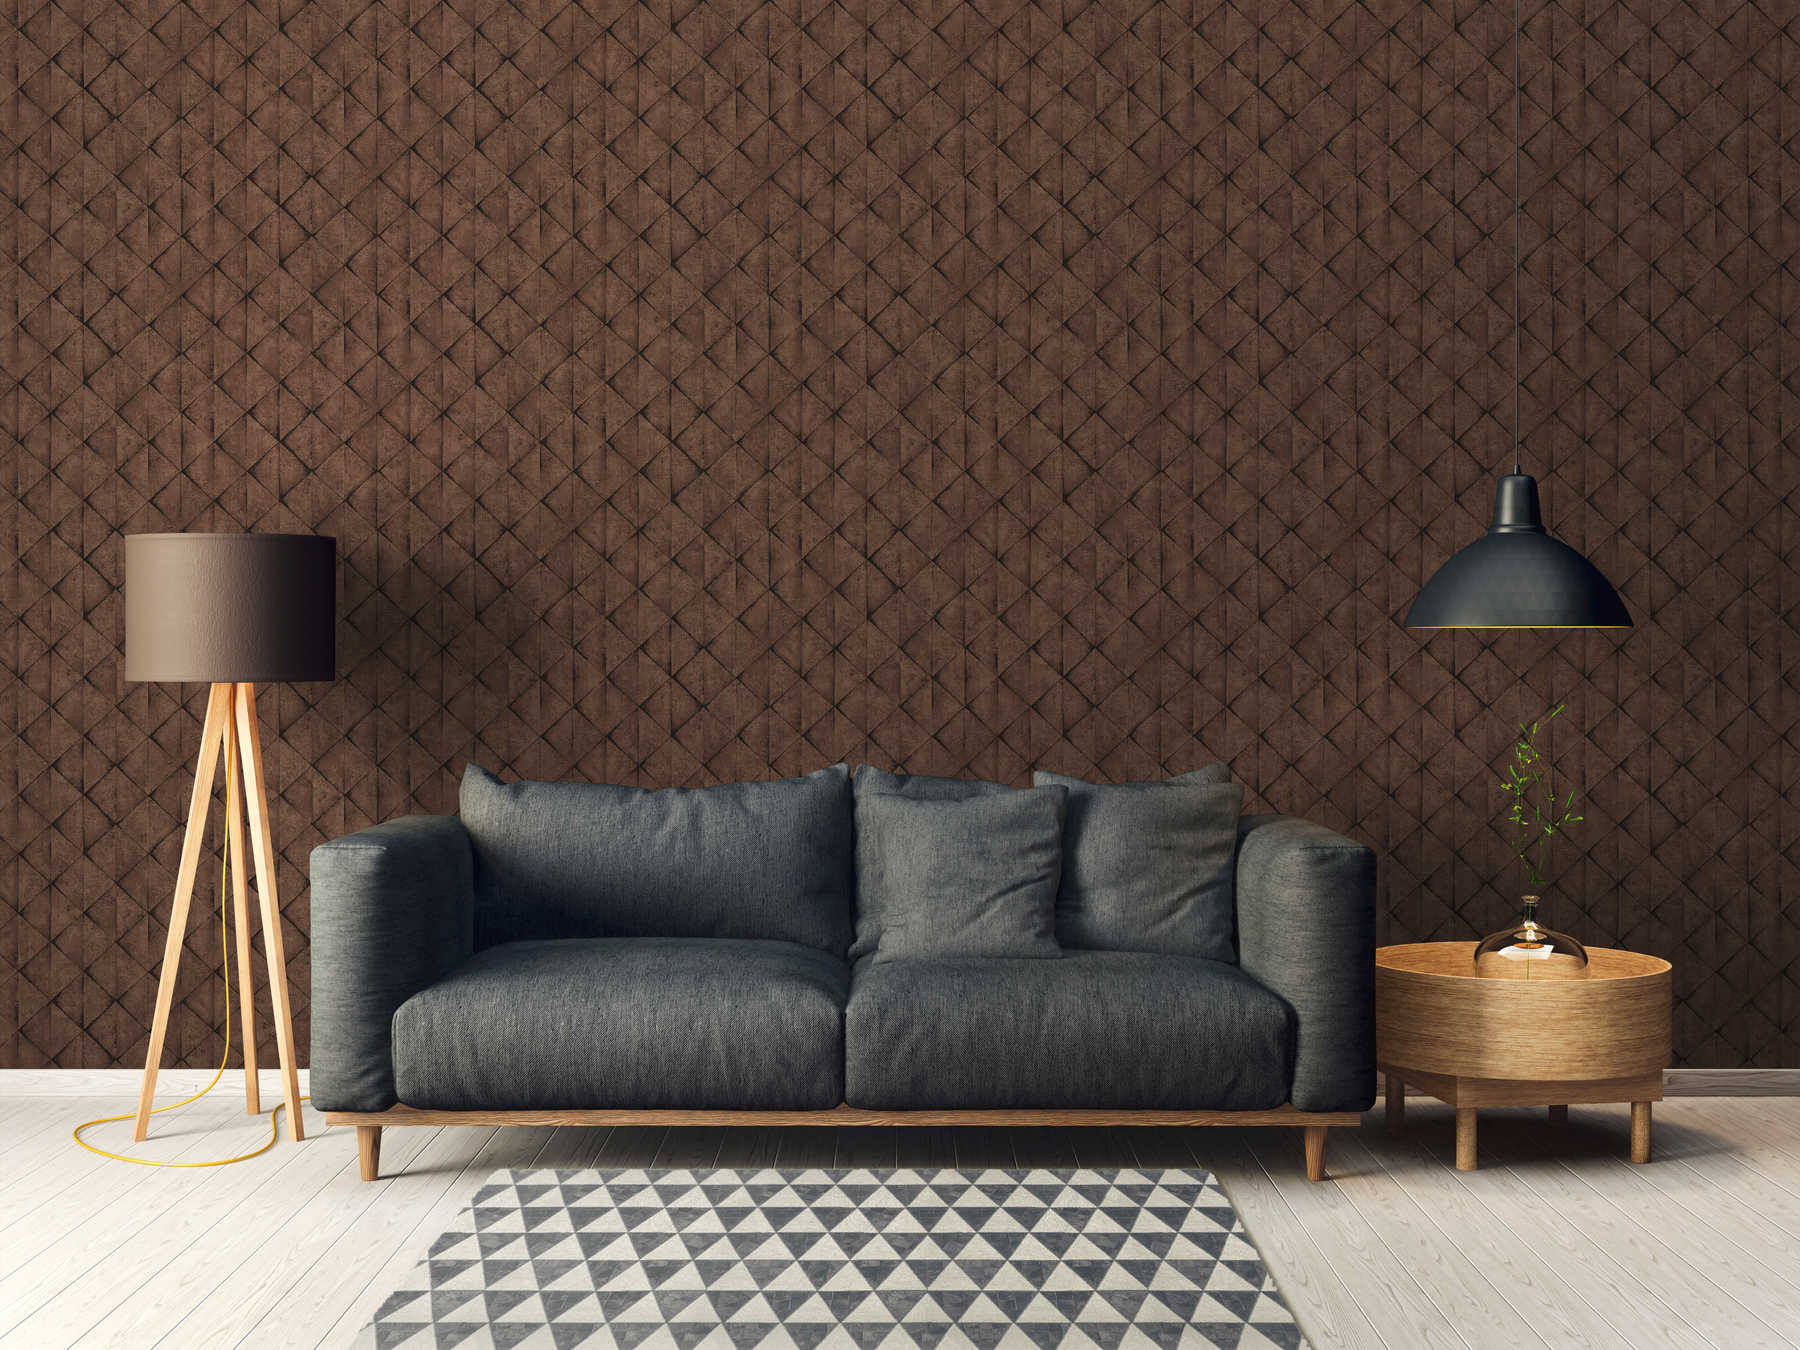             Wallpaper concrete look 3D tile design - brown, black
        